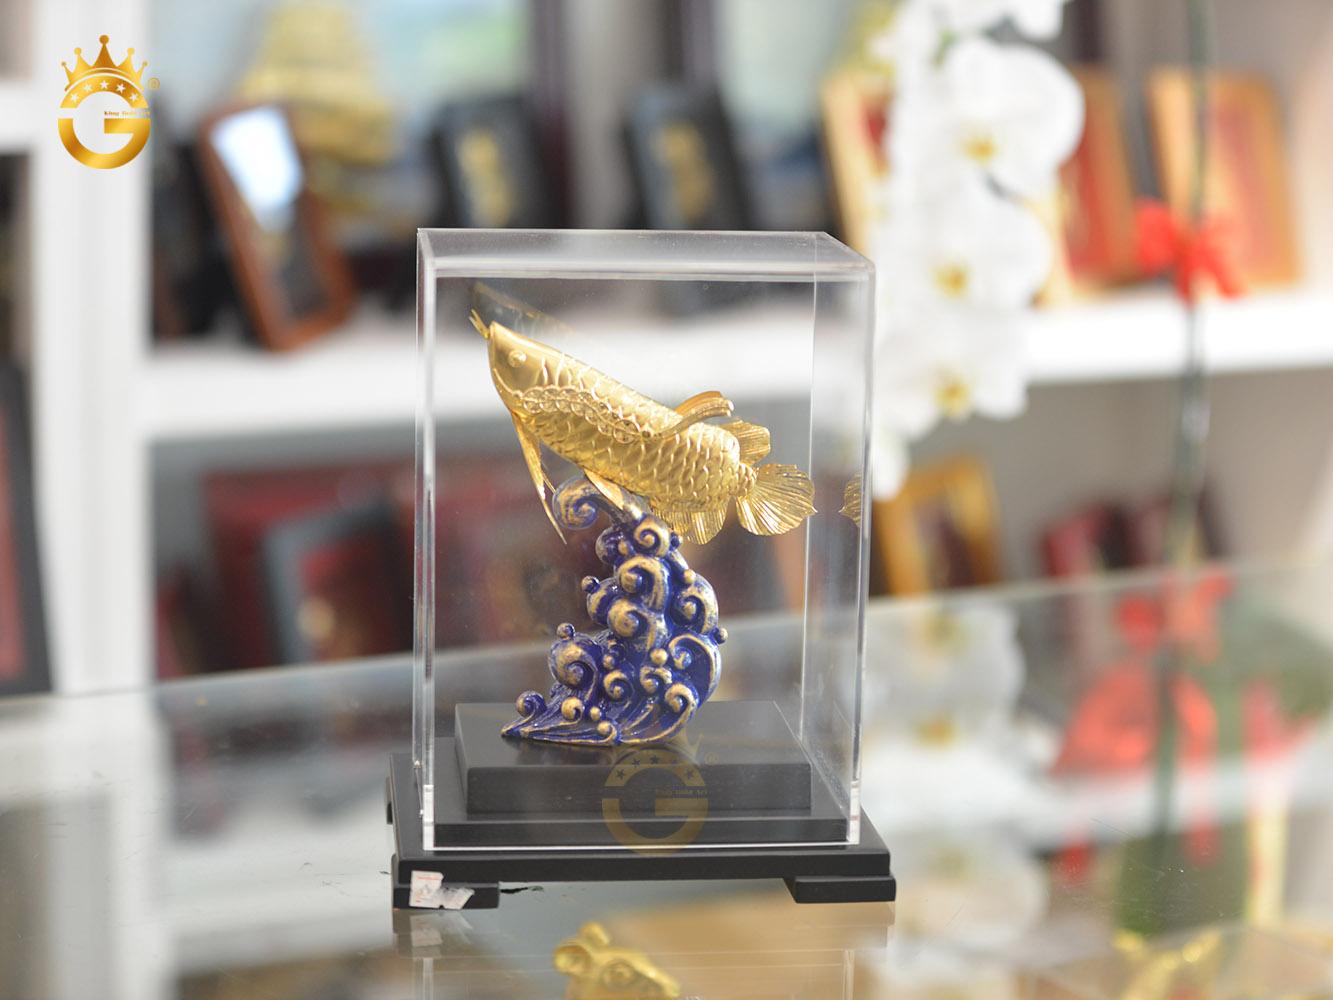 King Gold chi nhánh Hồ Chí Minh ra mắt mẫu tượng cá rồng mạ vàng 24k đẹp tinh xảo